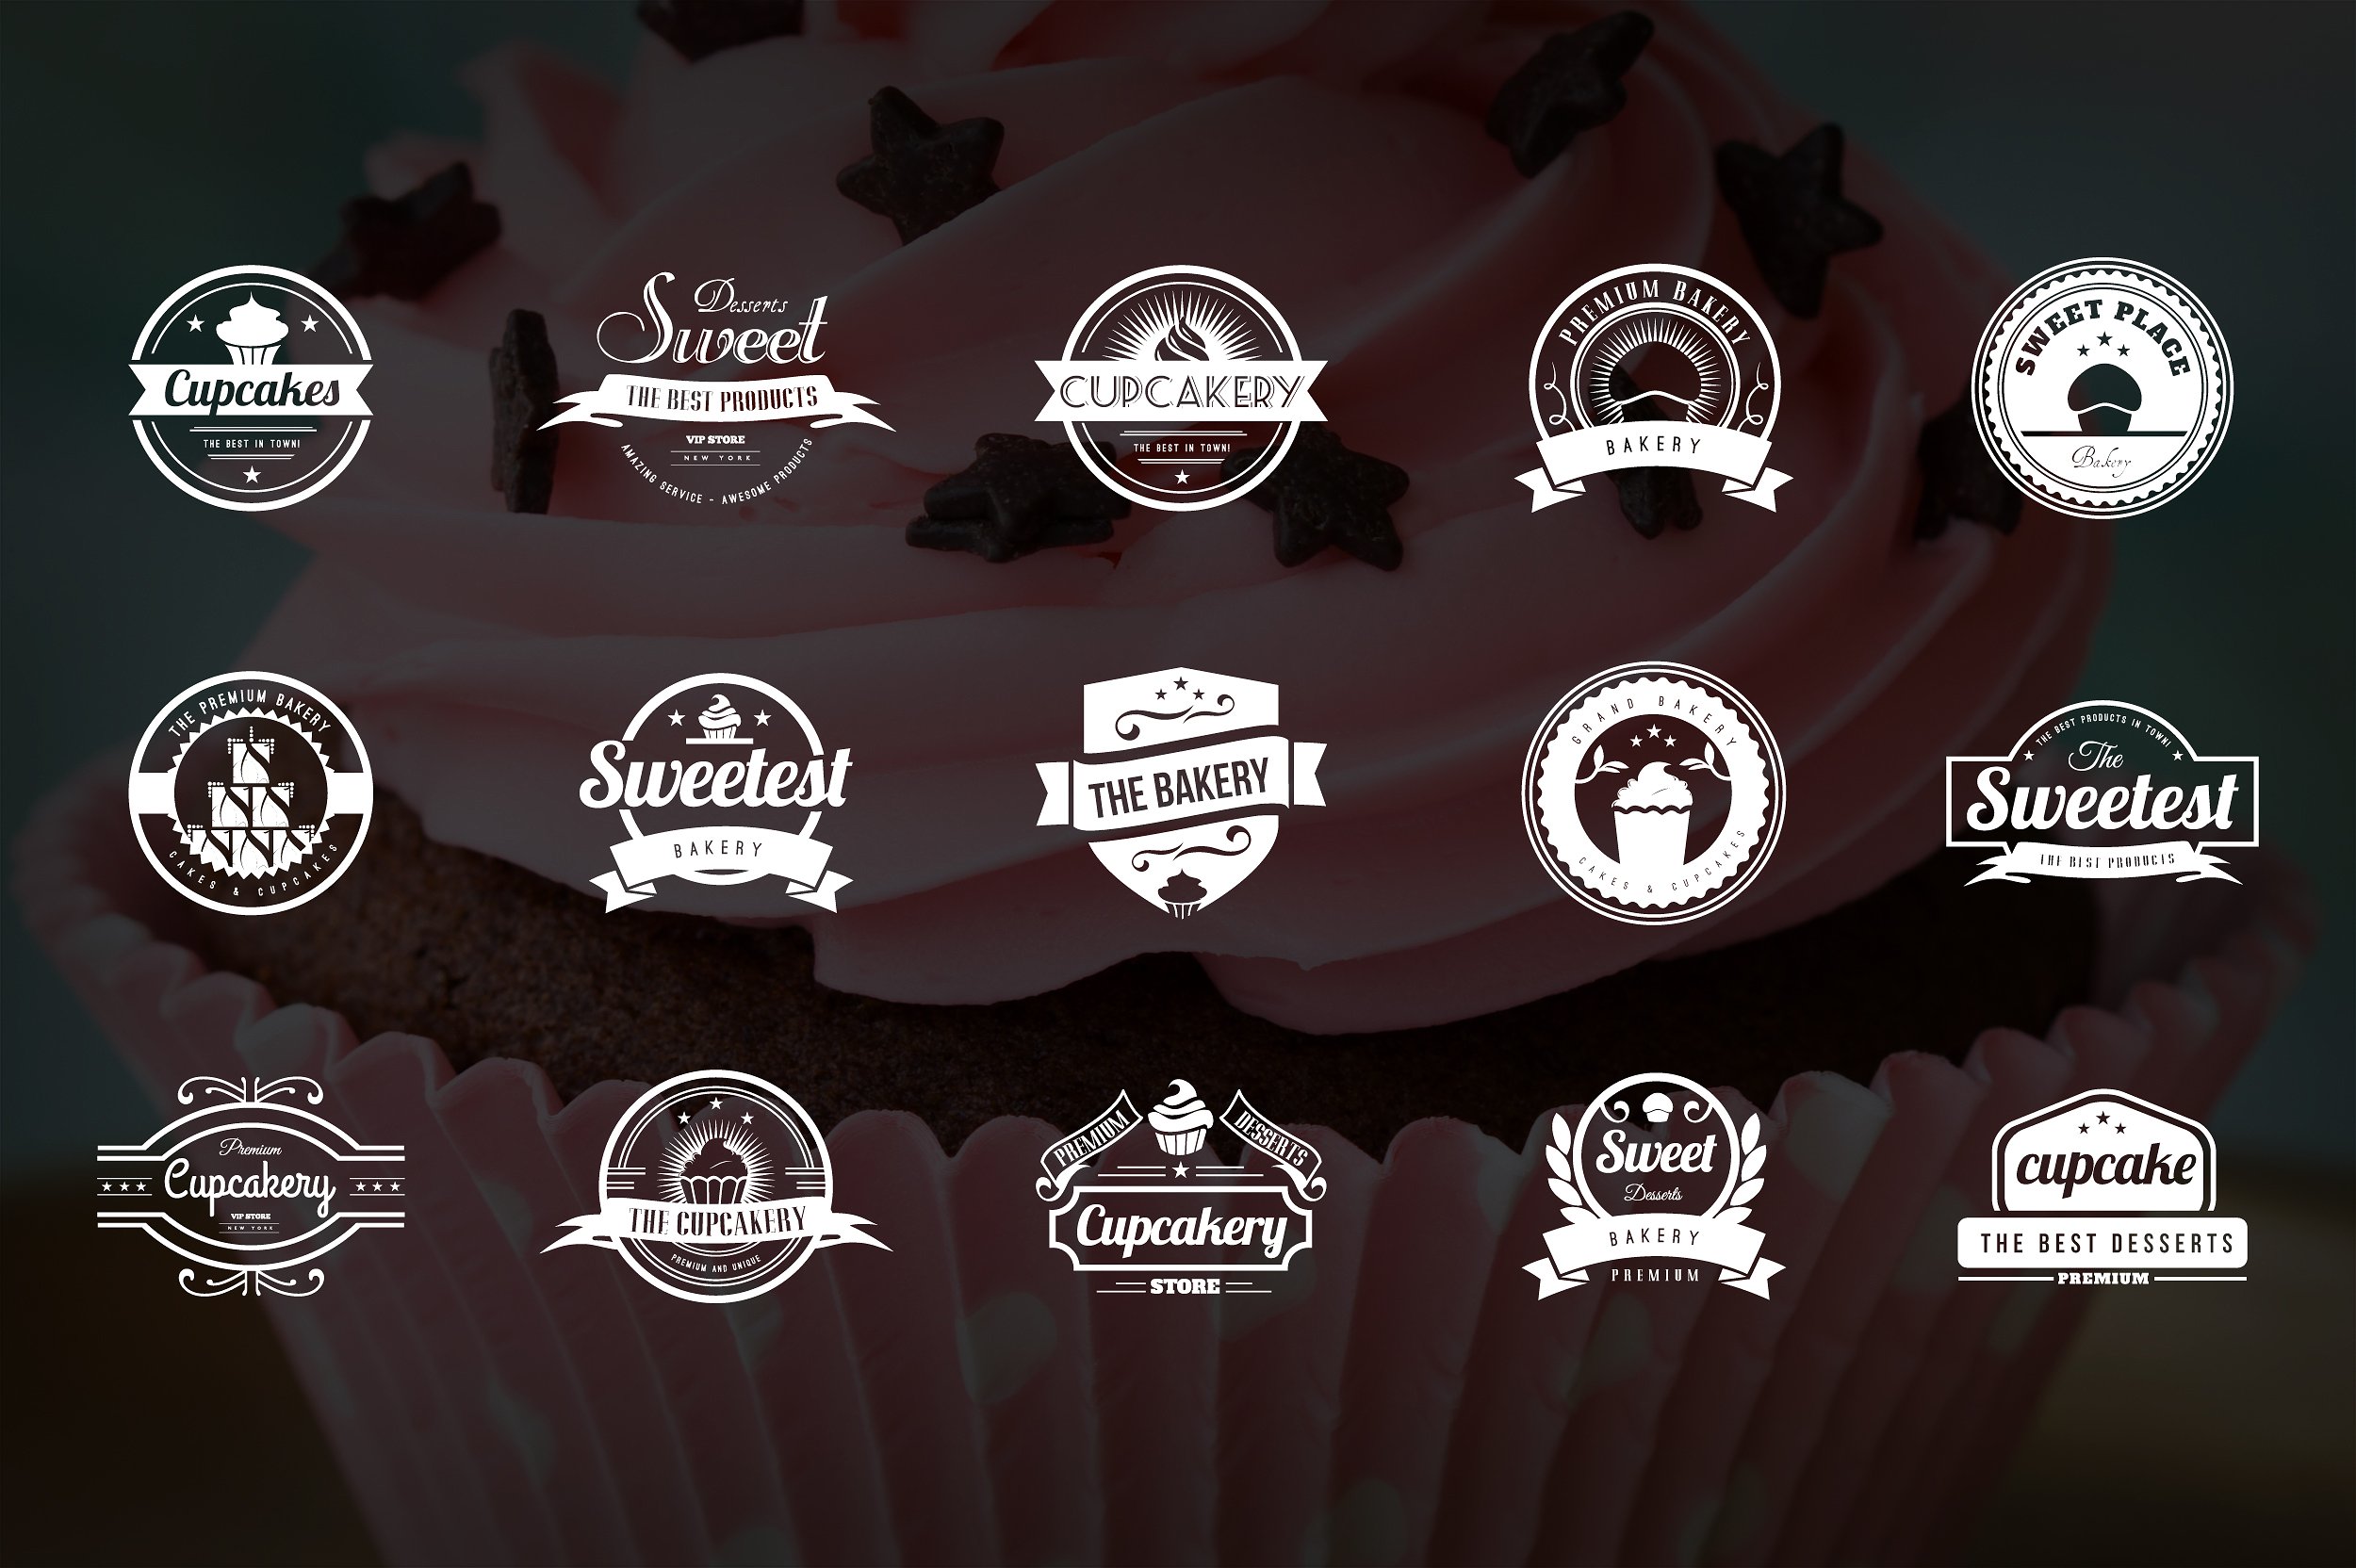 15组蛋糕甜点面包房复古风格徽章图标素材 Bakery, C